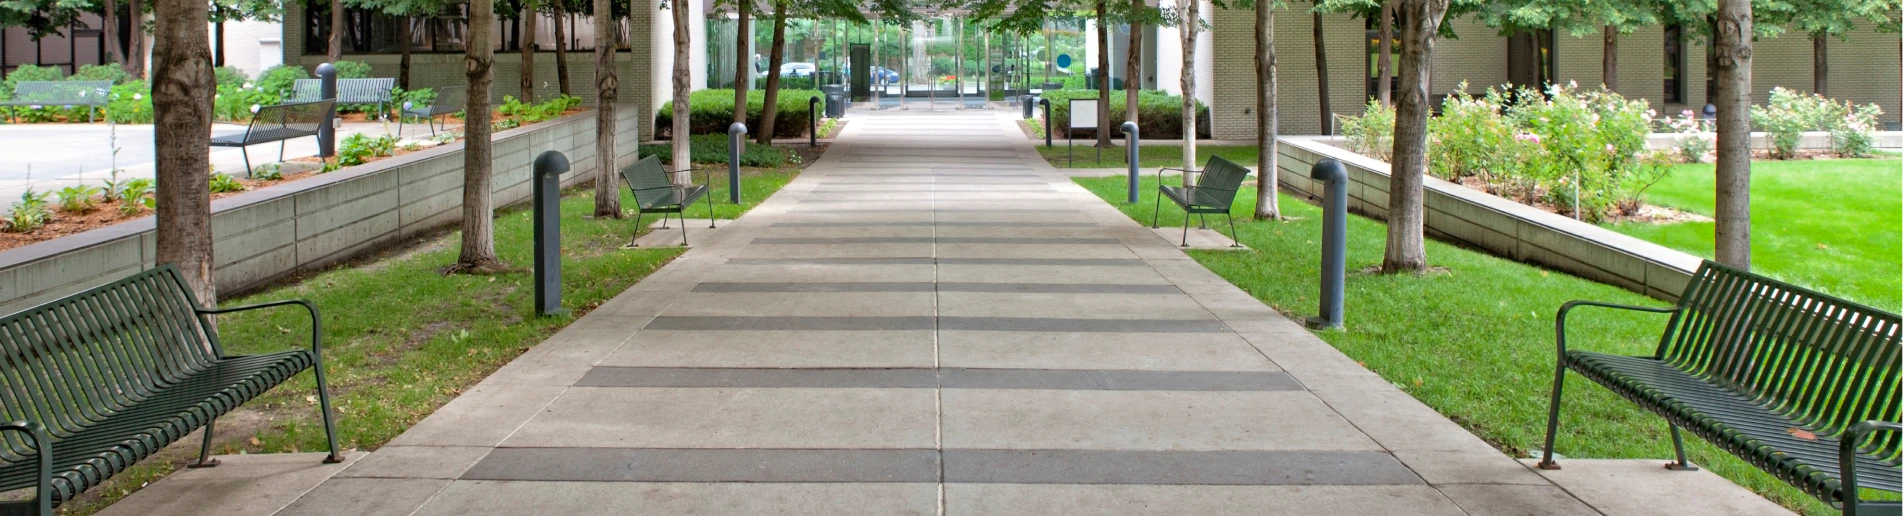 commercial concrete sidewalk